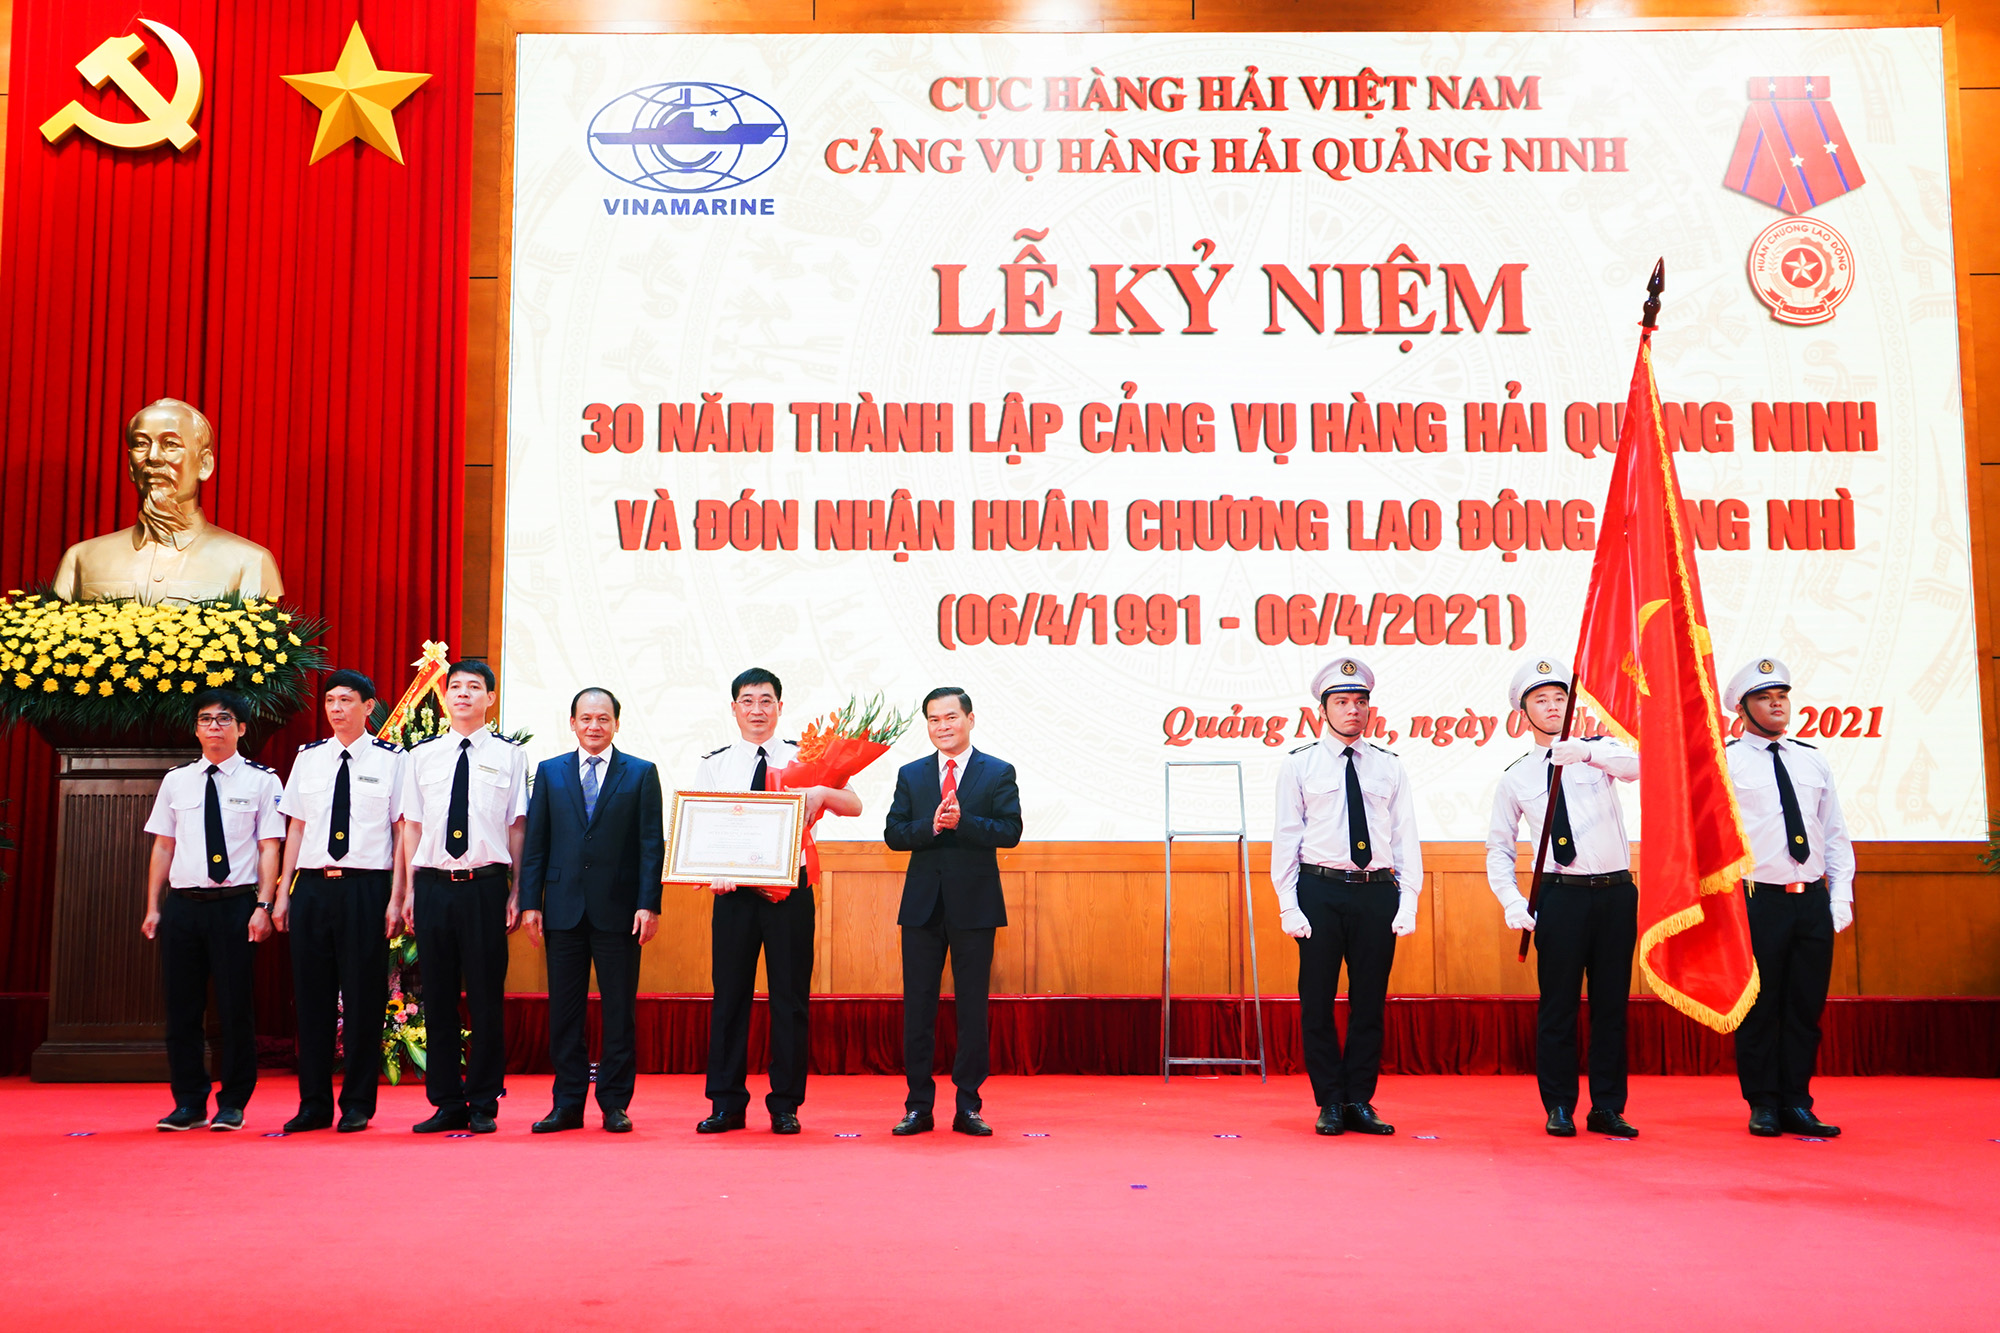 Cảng vụ Hảng hải Quảng Ninh vinh dự đón nhận Huân chương Lao động hạng nhì